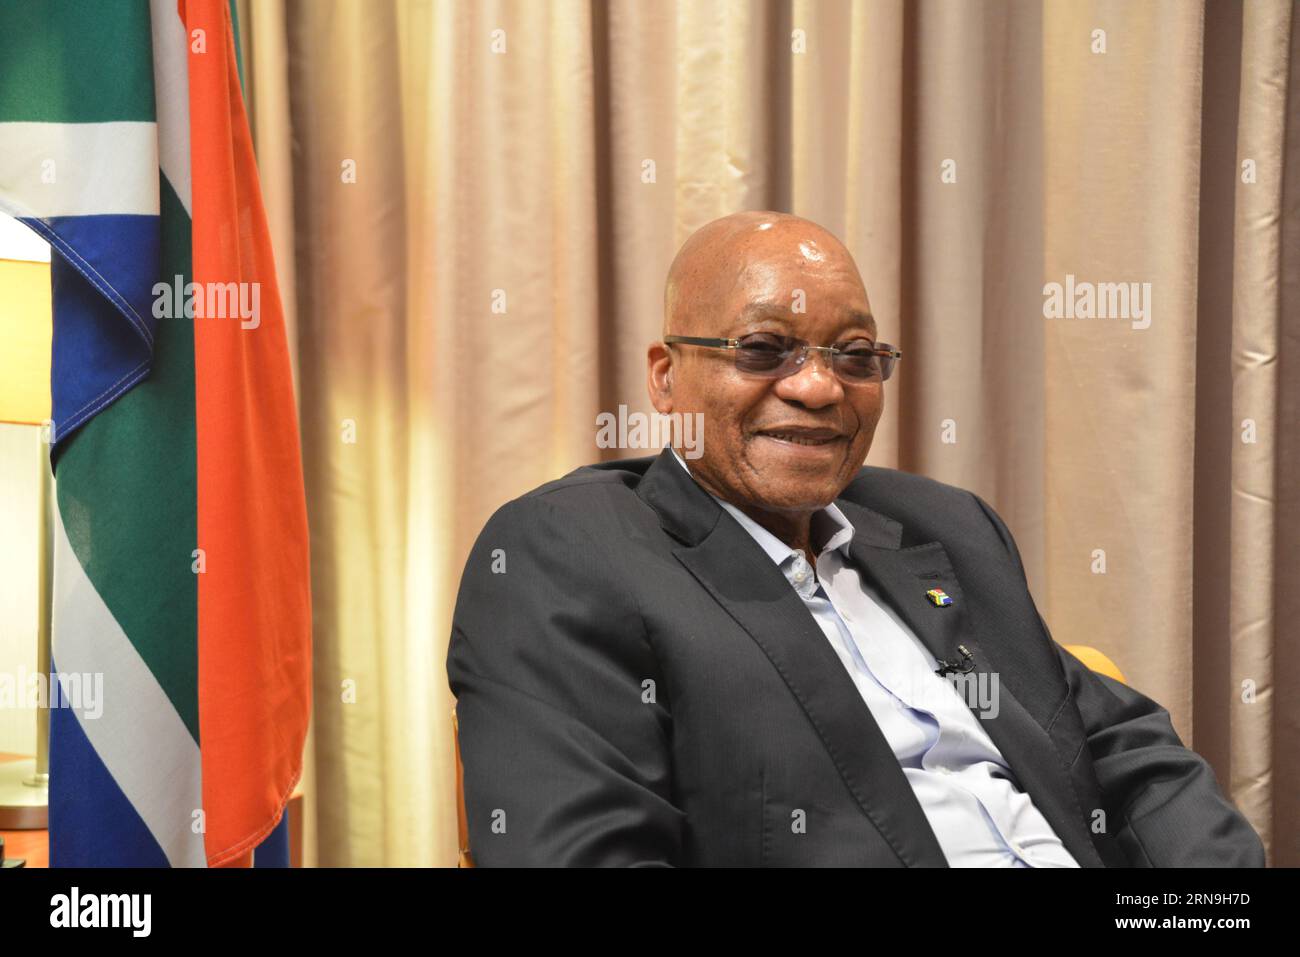 (151207) -- JOHANNESBURG, 6 dicembre 2015 -- il presidente sudafricano Jacob Zuma reagisce durante un'intervista con Xinhua a Johannesburg, Sudafrica, 6 dicembre 2015. La domenica Zuma ha attaccato alcuni paesi occidentali per aver calunniato l' assistenza della Cina all' Africa come nuovo colonialismo . La Cina sta lavorando con noi ed è pronta a sedersi e discutere cosa può fare per aiutare l'Africa, ha detto Zuma. ) (Zjy) SUD AFRICA-JOHANNESBURG-ZUMA-INTERVISTA ZhaoxXi PUBLICATIONxNOTxINxCHN 151207 Johannesburg DEC 6 2015 il presidente sudafricano Jacob Zuma reagisce durante l'intervista con XINHUA A Johannesburg Sud Africa DEC Foto Stock